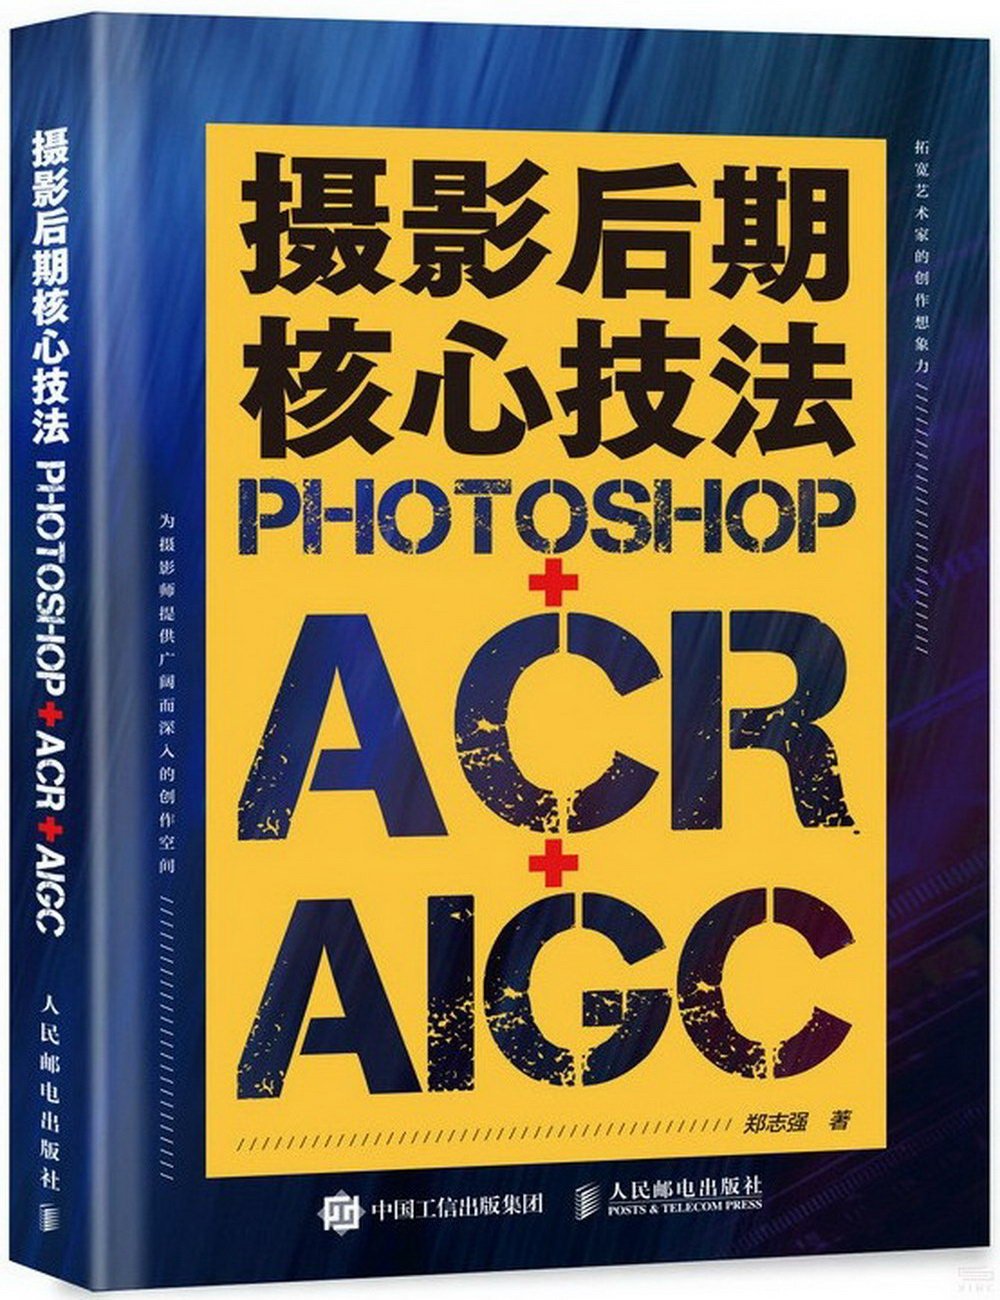 攝影後期核心技法：Photoshop+ACR+AIGC